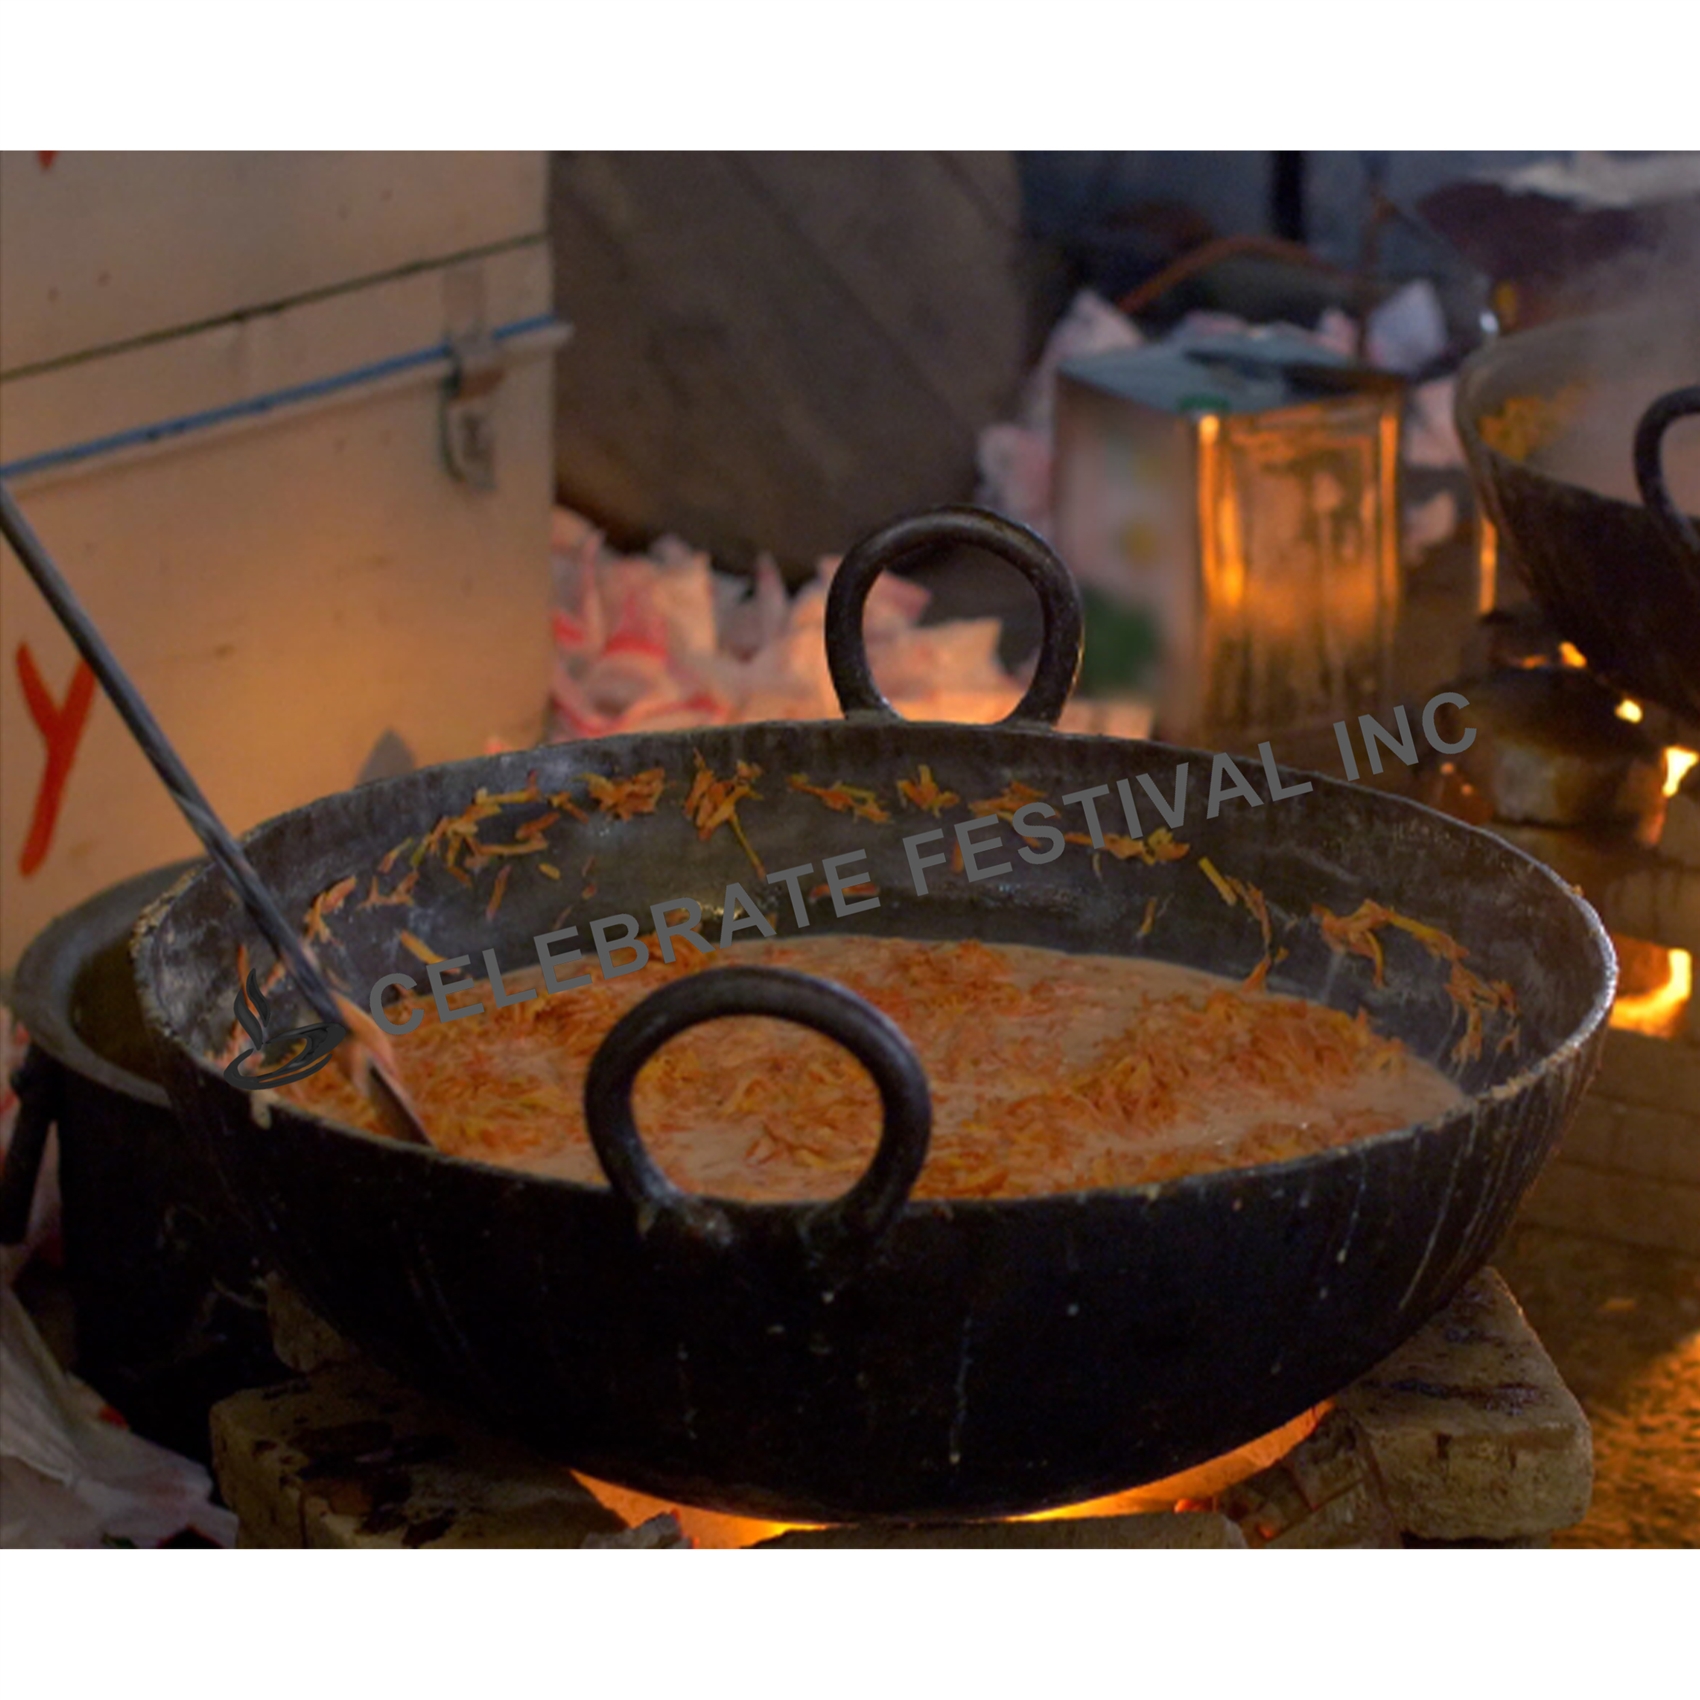 Indian Traditional Brass Regular Karahi Cooking Kadai Cooking Wok Capacity  3 Ltr